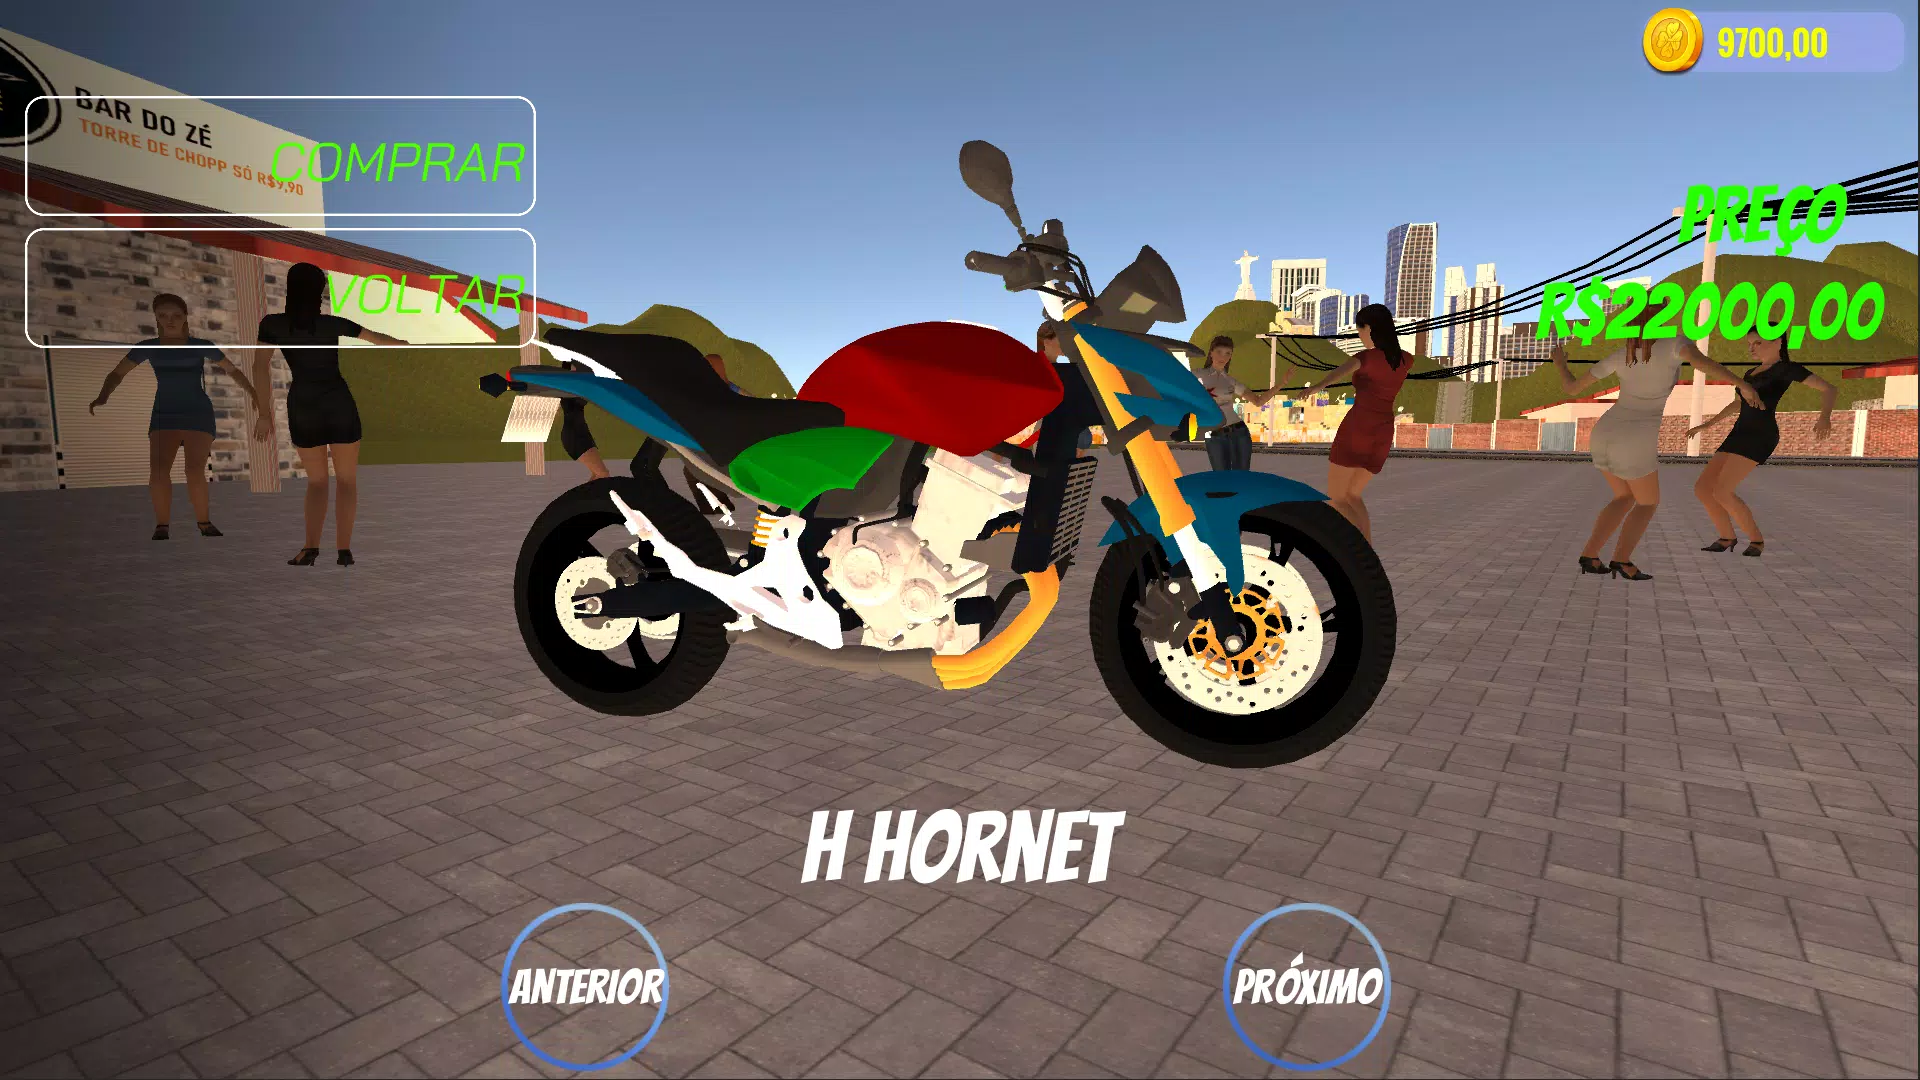 Baixar e jogar Jogos de Motos Brasileiras - Jogo de Moto Brasil no PC com  MuMu Player